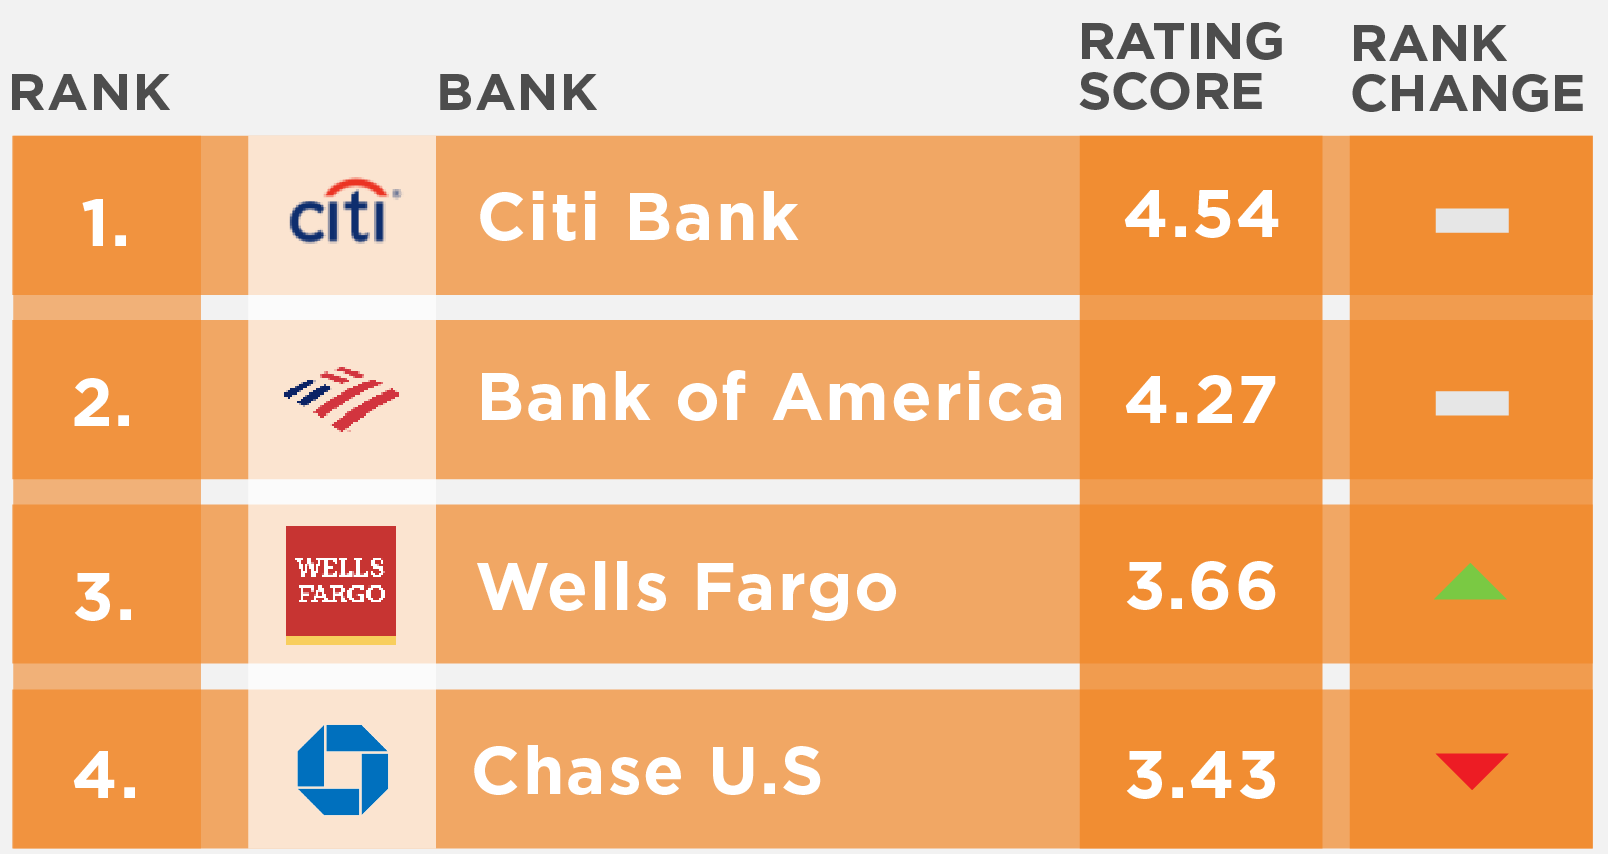 US National banks Engaged Customer Score (ECS) performance rankings for September 2022